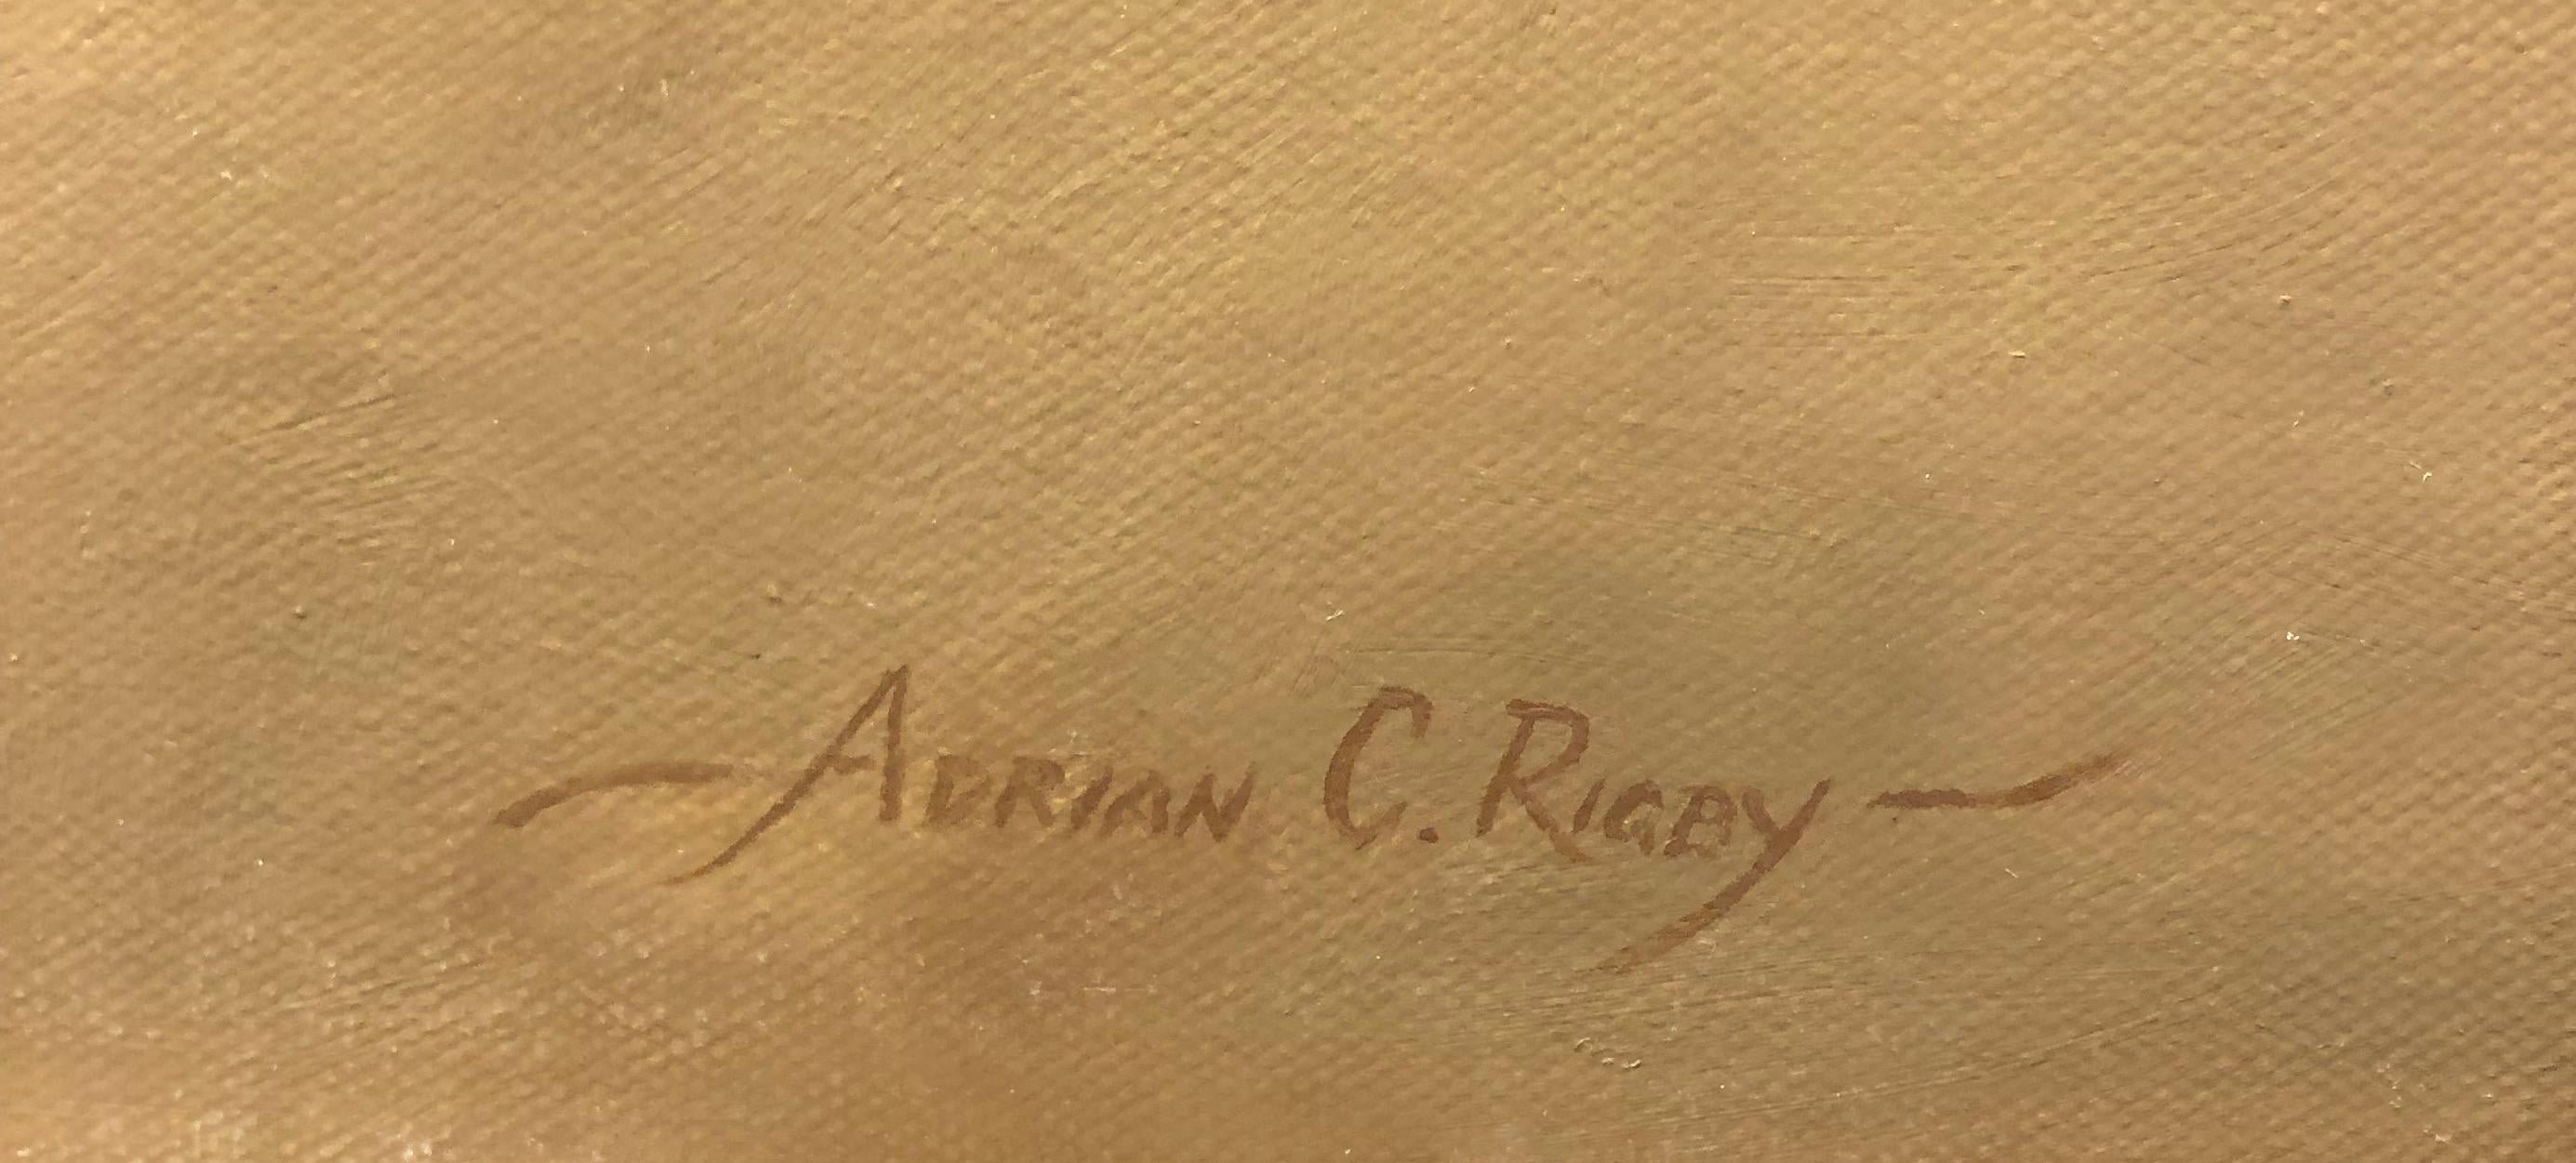 Adrian Rigby, 